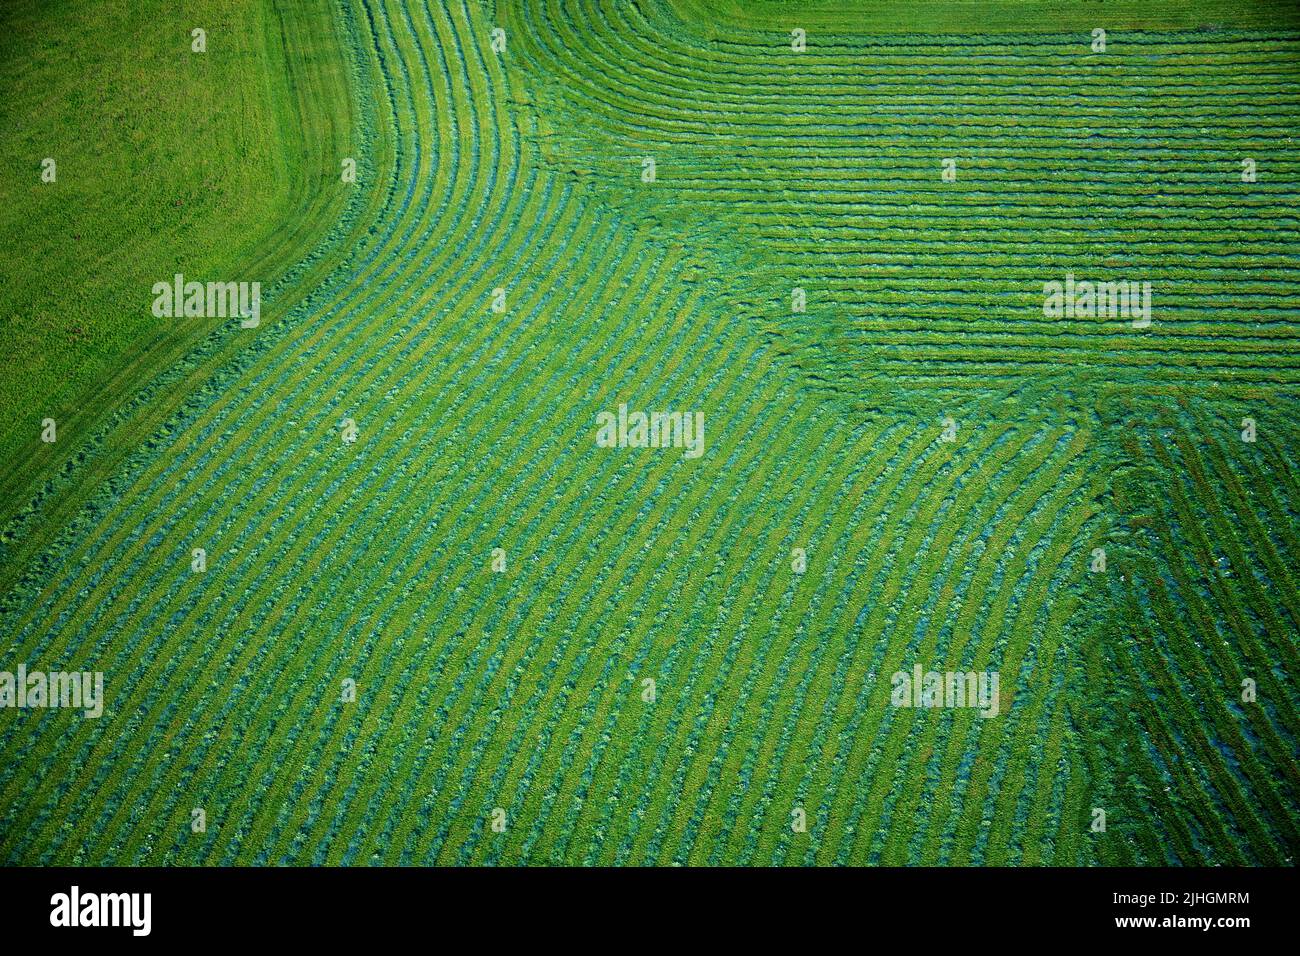 Landwirtschaftliche Felder bilden Reihen und Muster in grün, Ansicht von oben Stockfoto